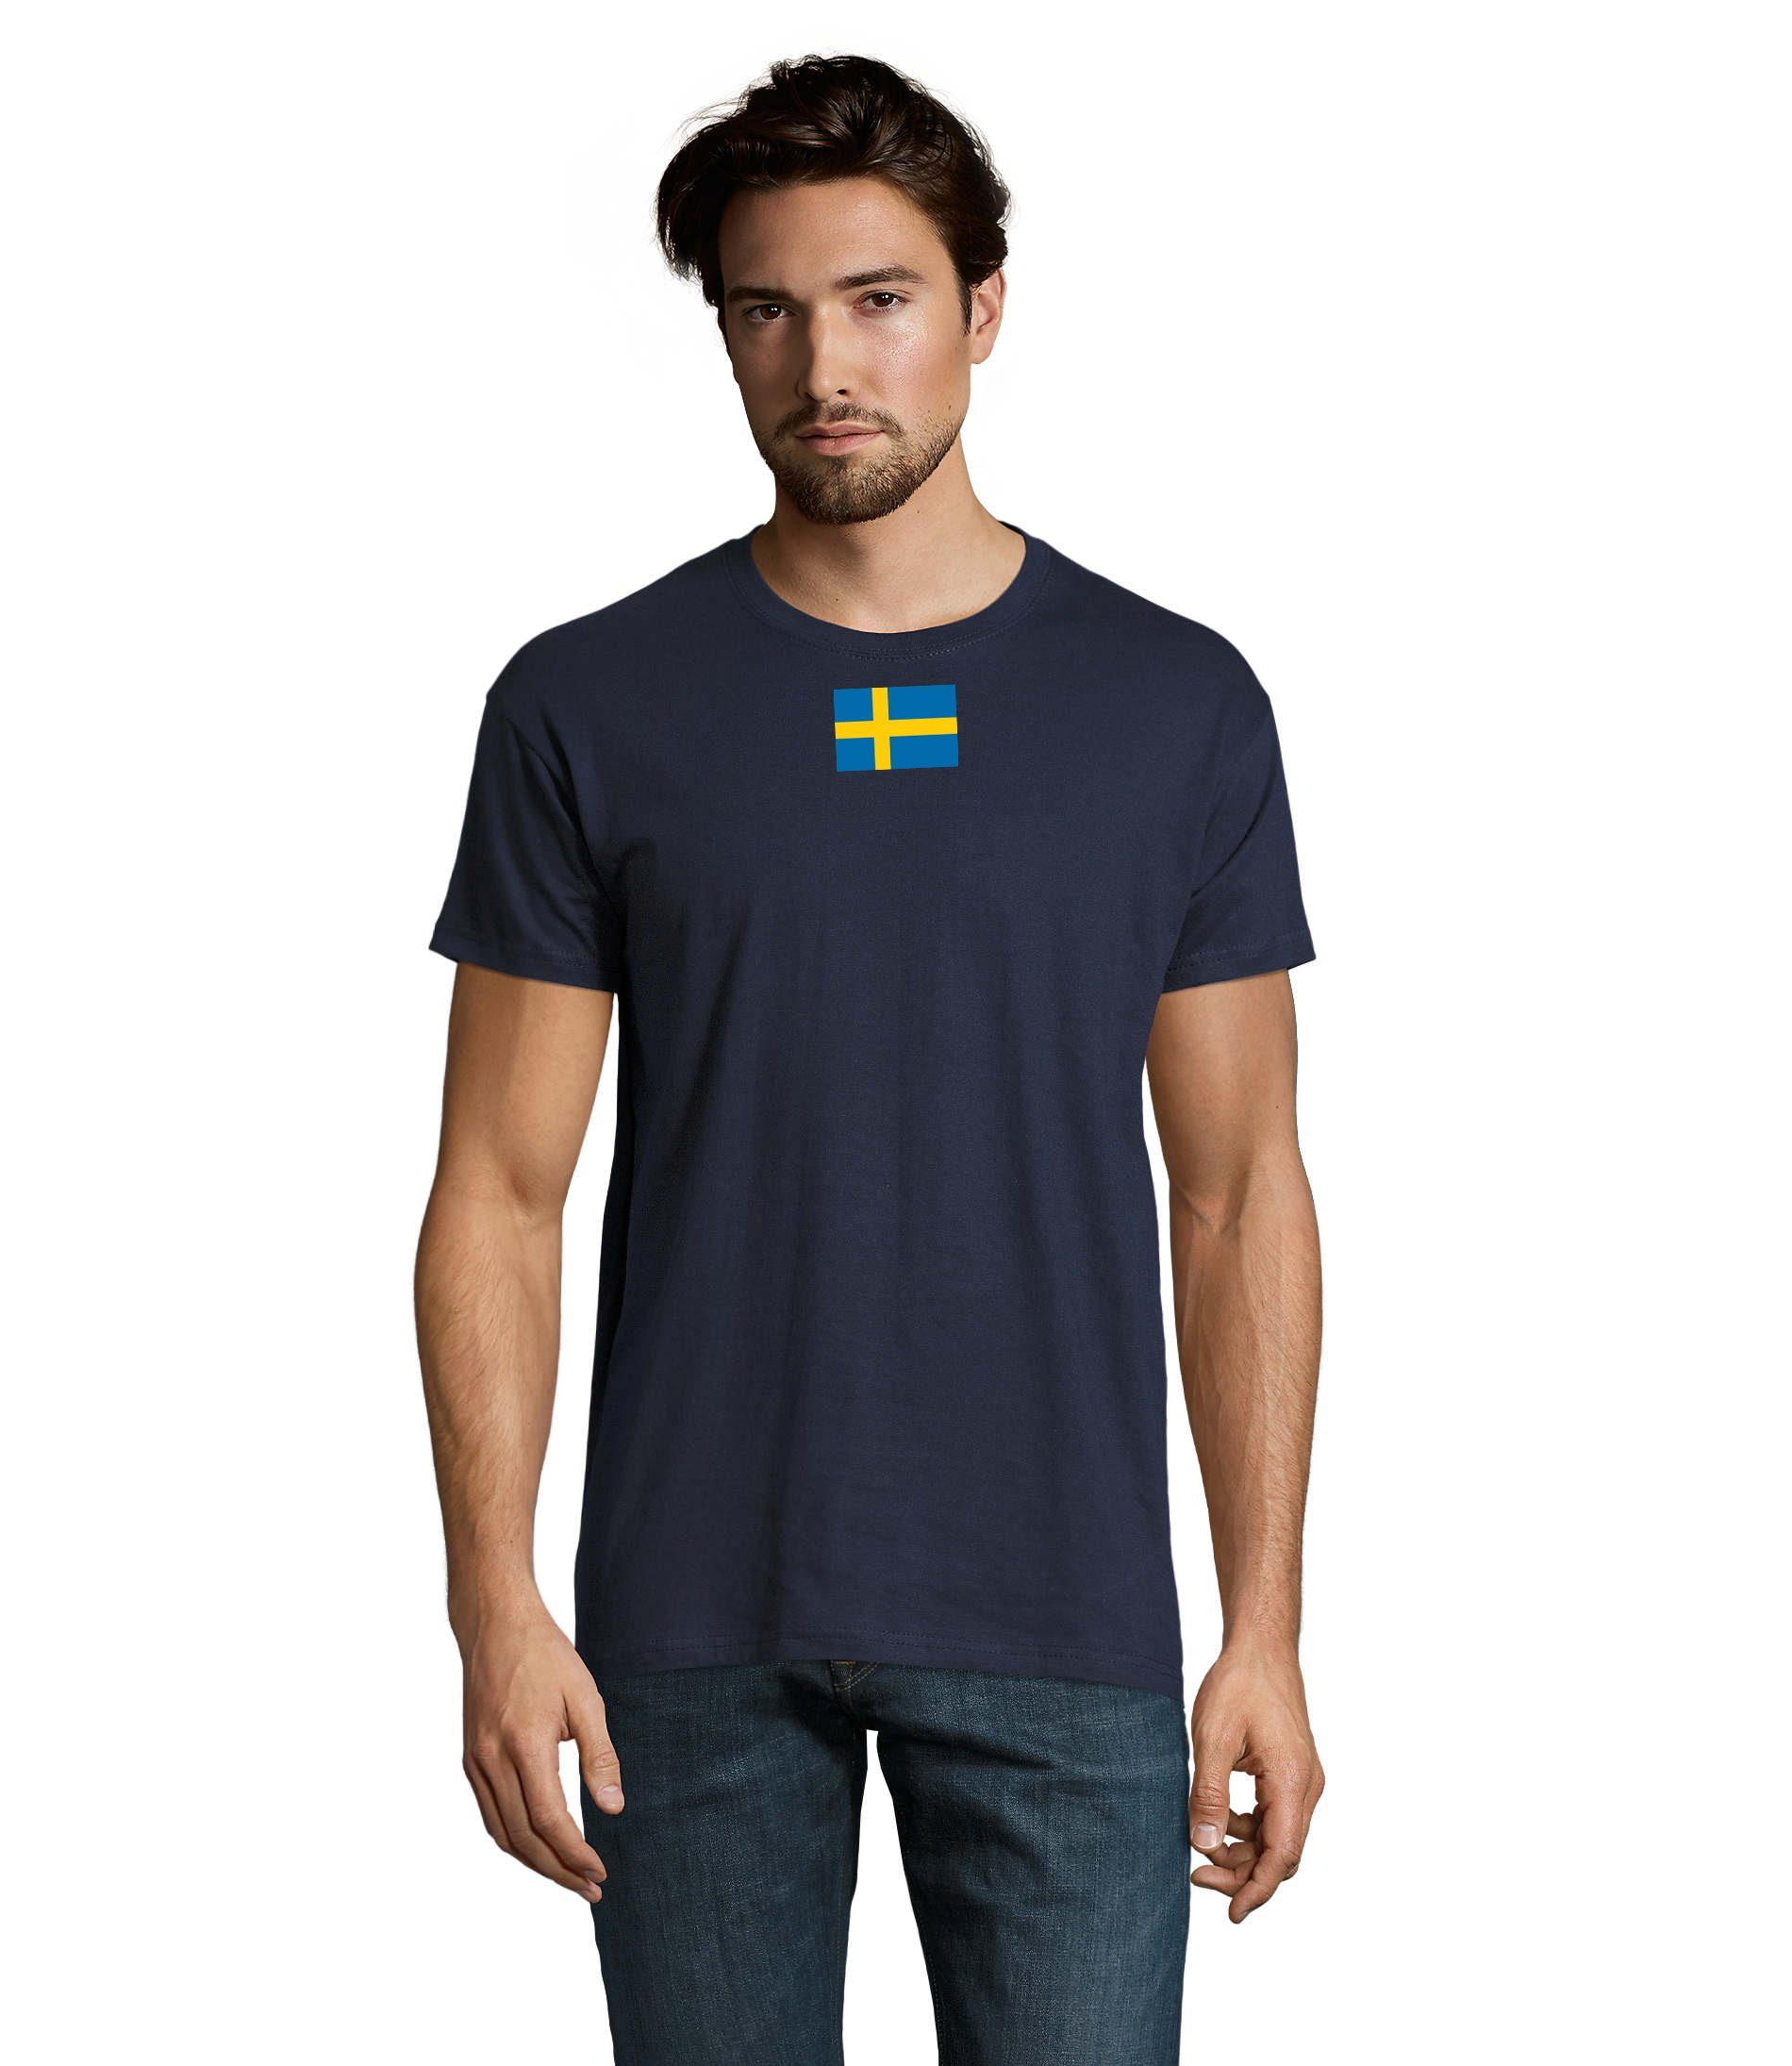 Schweden Nato Peace Brownie Navyblau & Force Blondie Armee USA Army Ukraine T-Shirt Air Herren